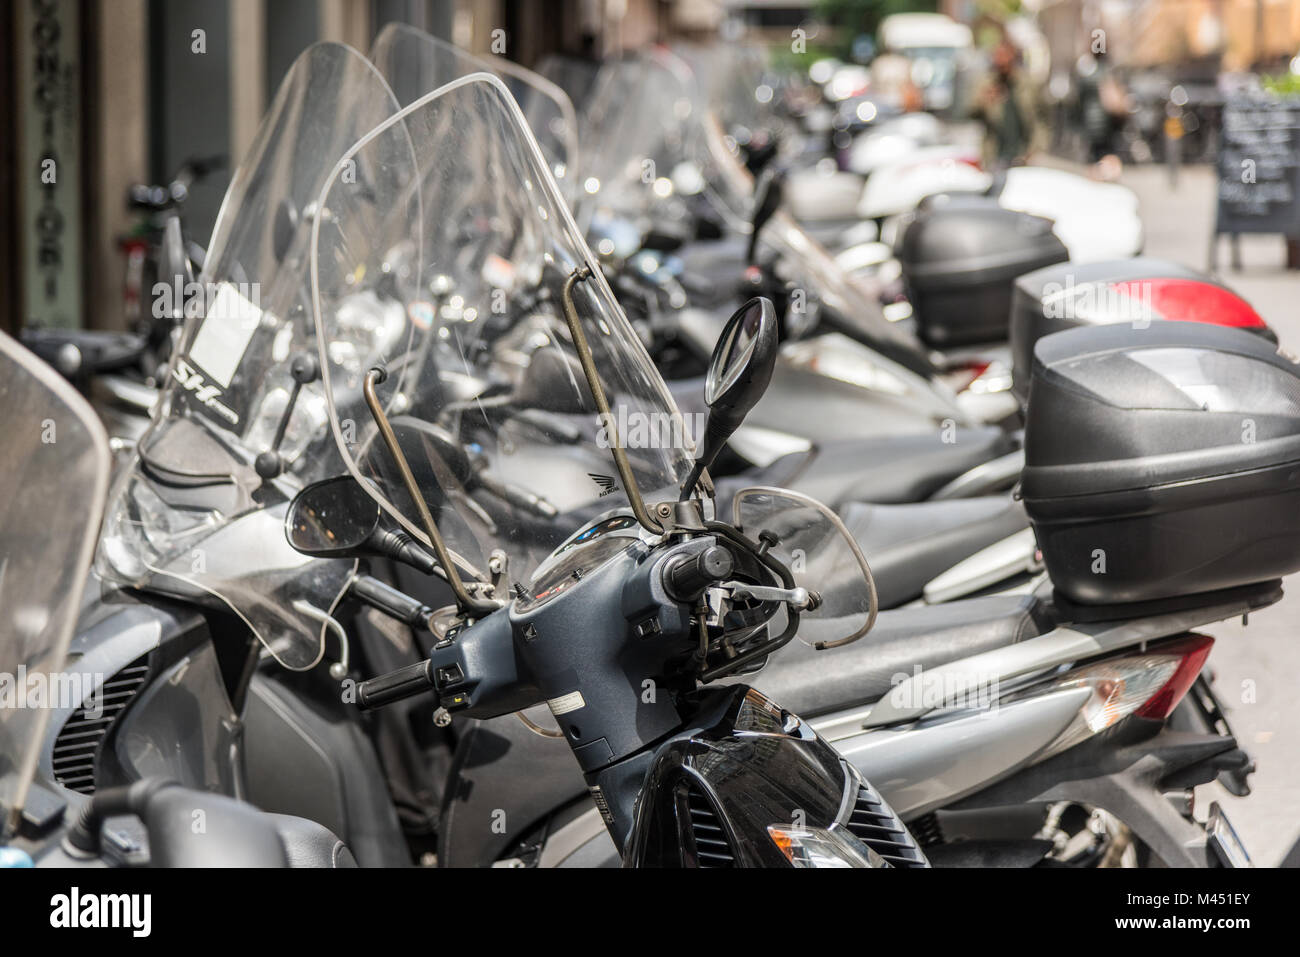 Rangées de motos et scooters en stationnement dans une rue de la ville de Bologne, Italie Banque D'Images